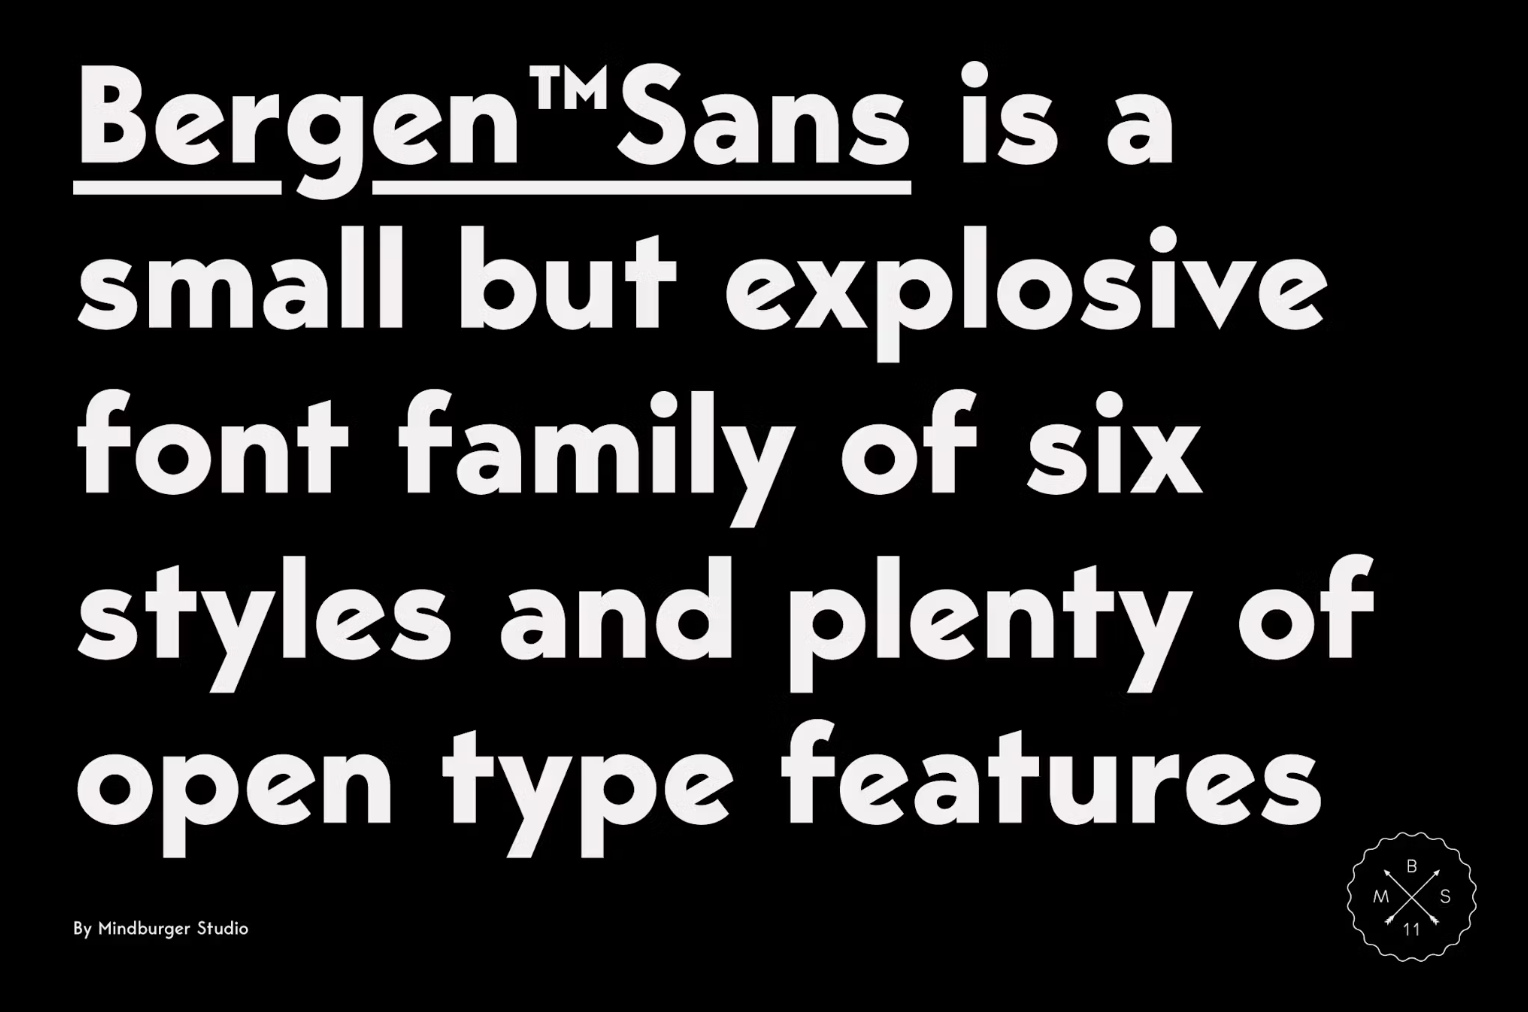 Bergen Sans by MindburgerStudio